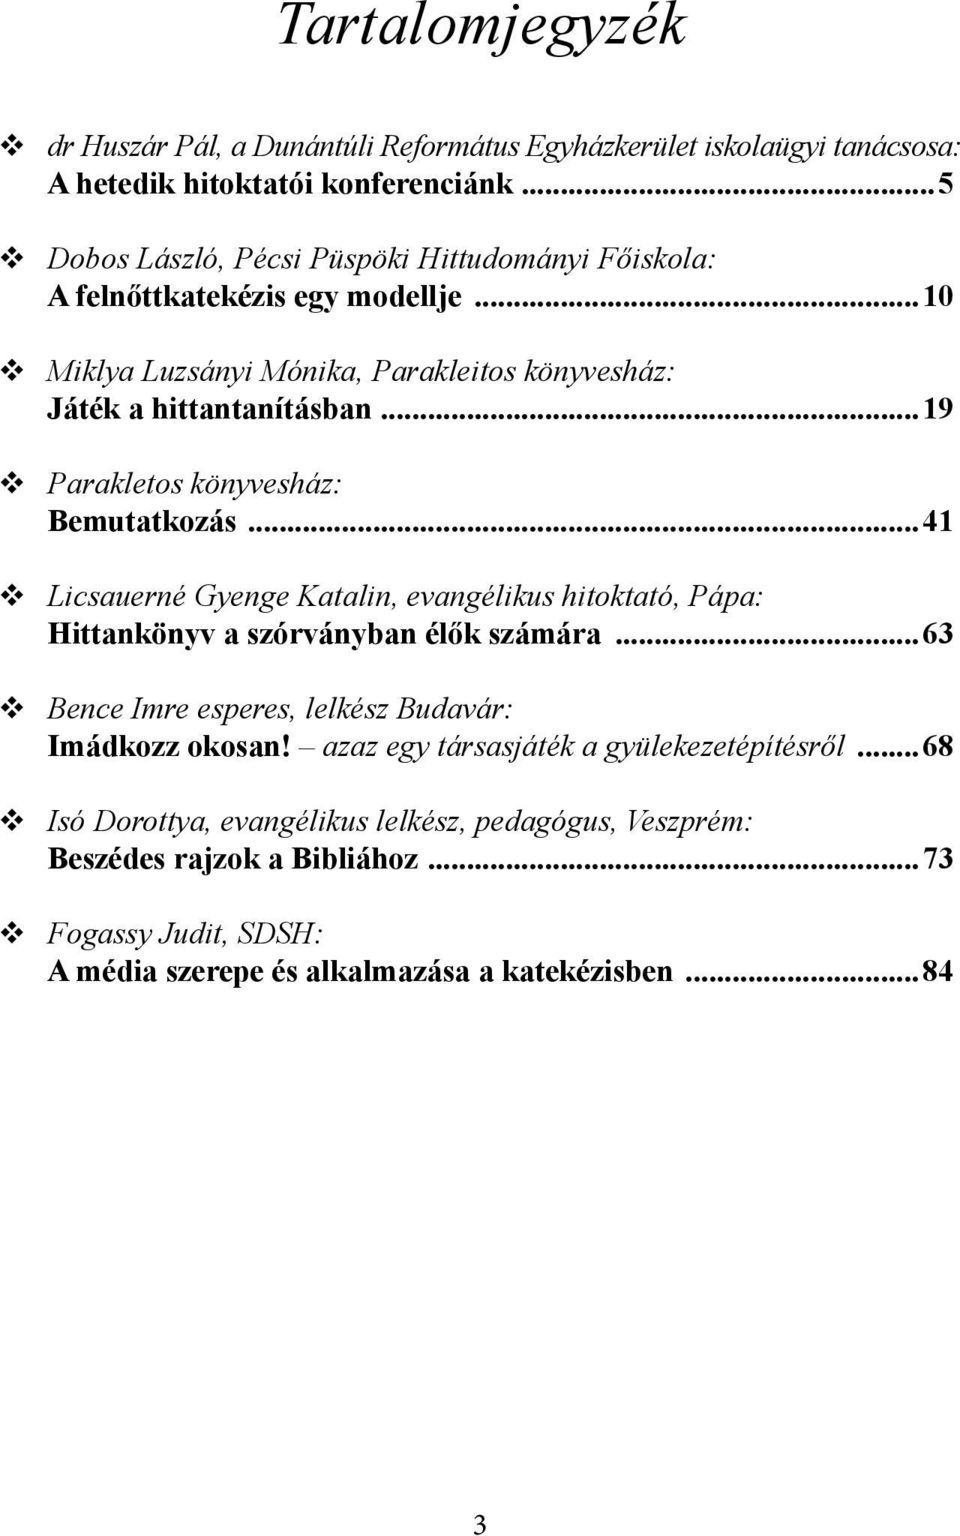 ..19 Parakletos könyvesház: Bemutatkozás...41 Licsauerné Gyenge Katalin, evangélikus hitoktató, Pápa: Hittankönyv a szórványban élők számára.